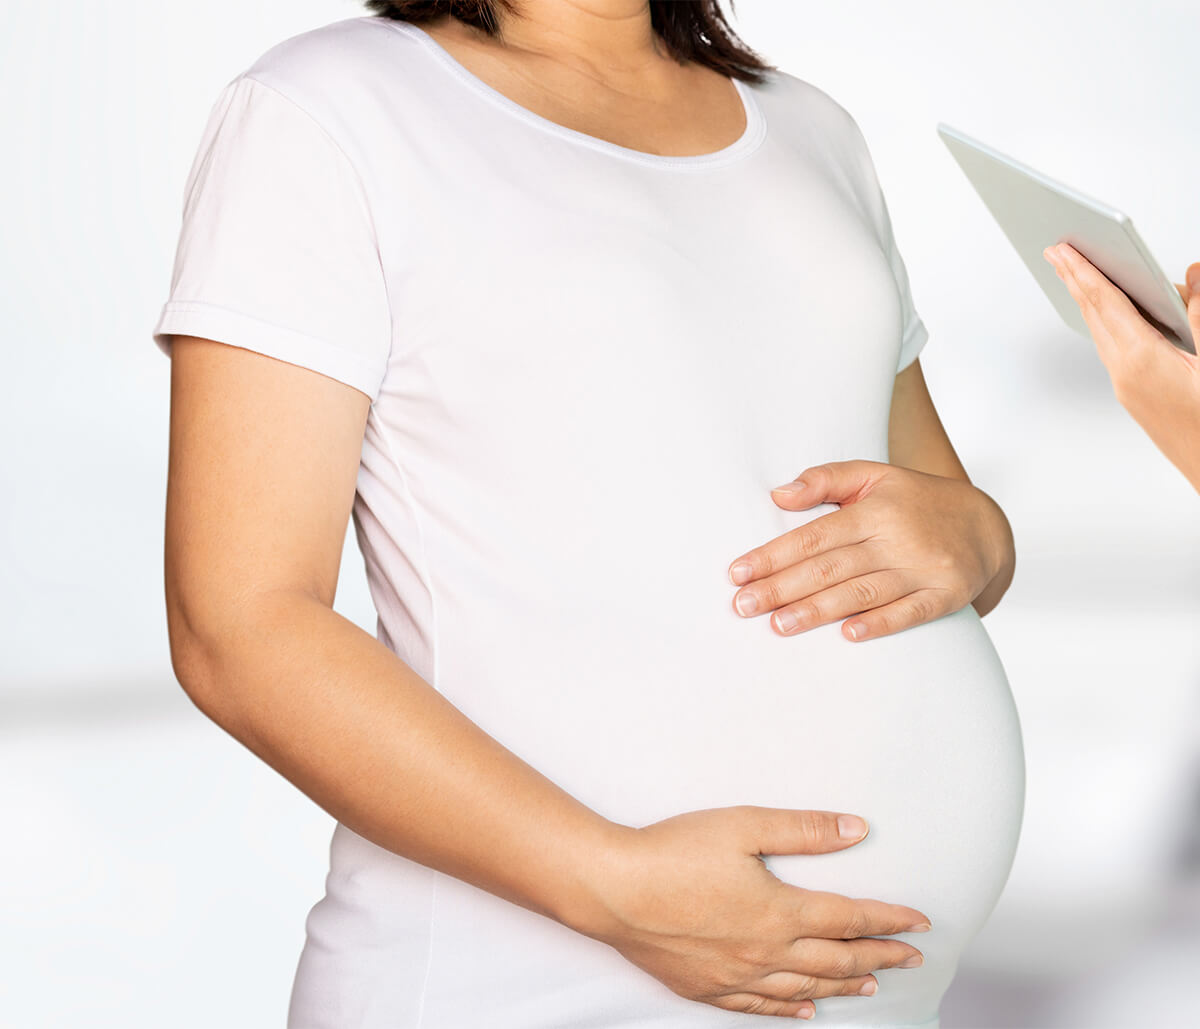 OBGYN for Prenatal Care in Houston TX Area